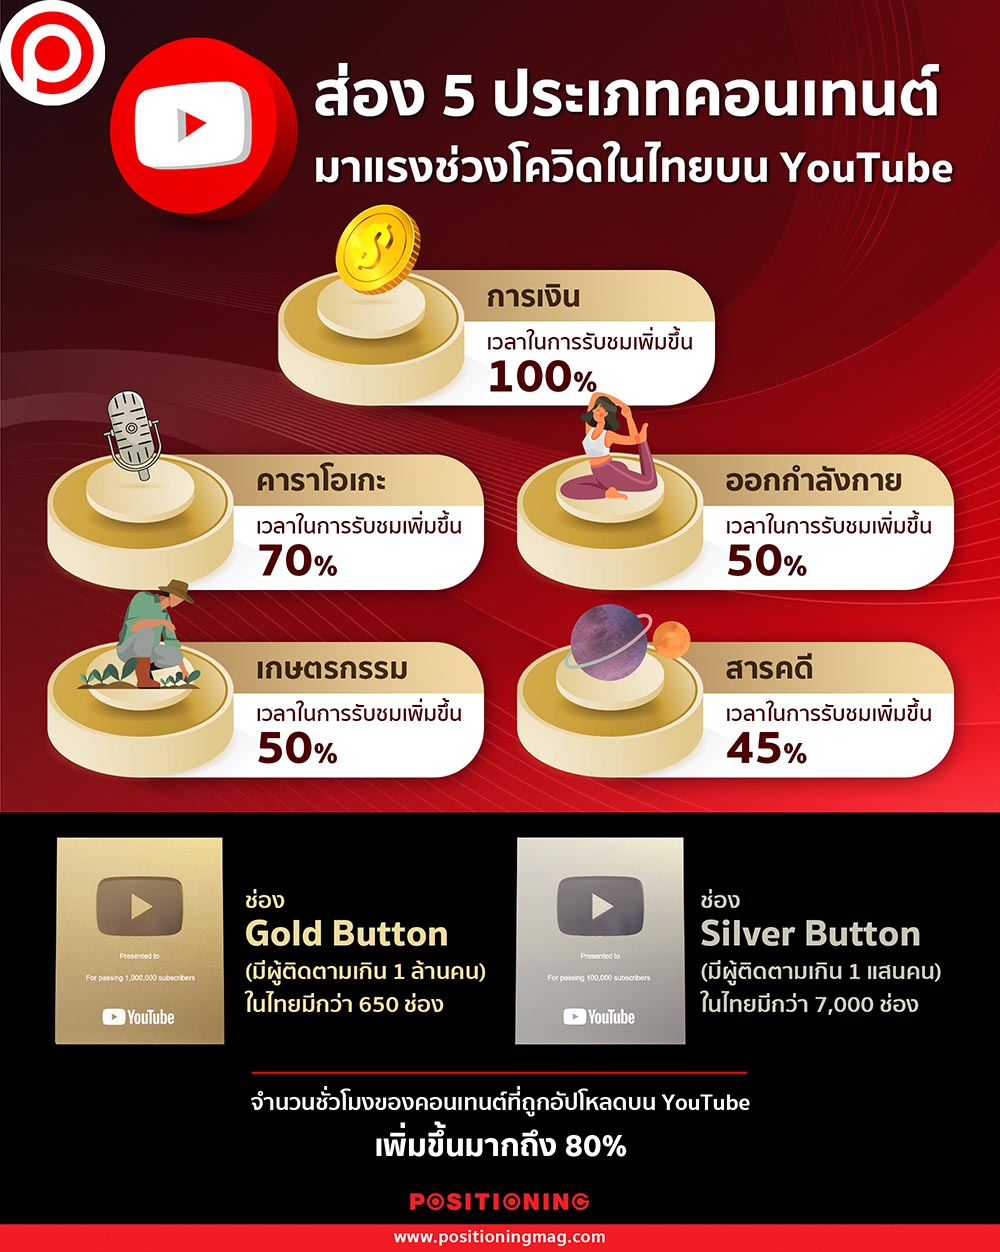 ส่อง 5 ประเภทคอนเทนต์มาแรงช่วงโควิดในไทยบน Youtube | Positioning Magazine